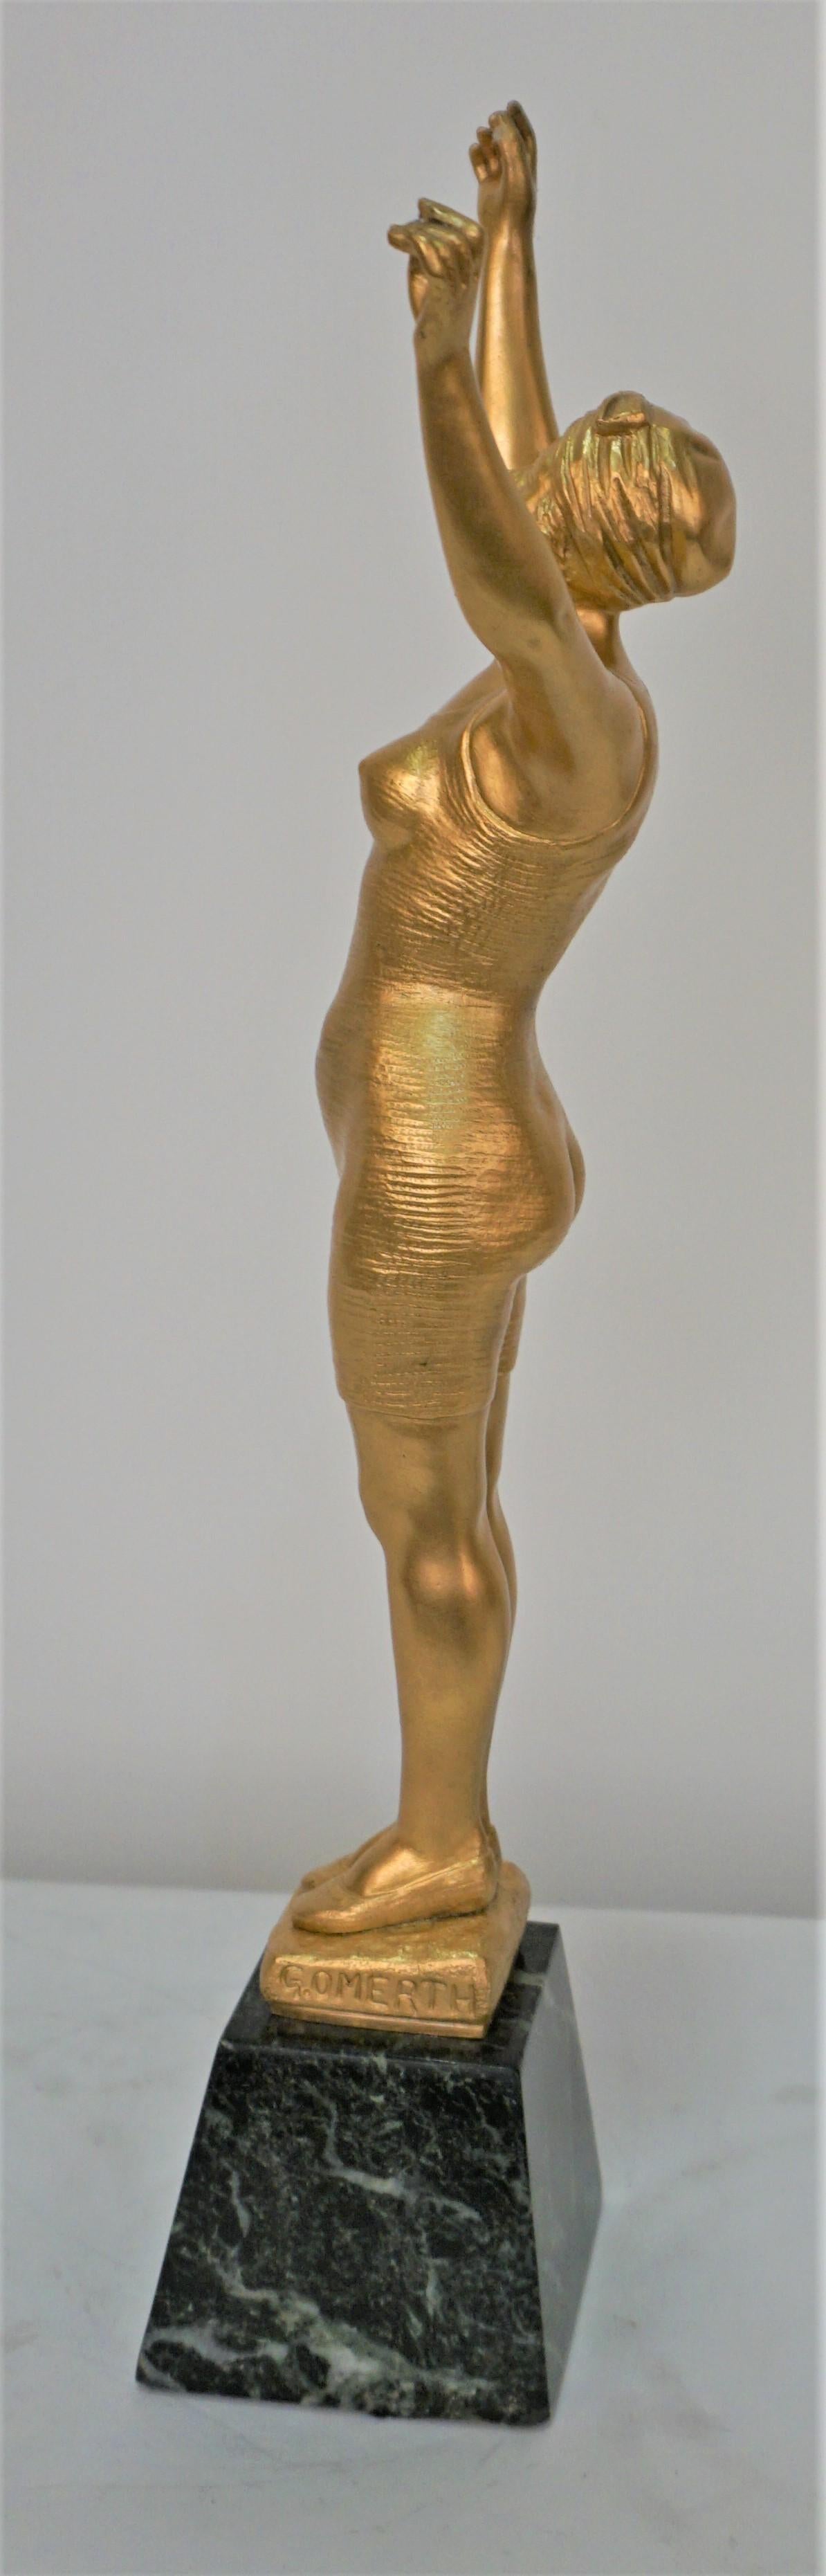 Bronze doré d'une figure féminine en maillot de bain debout sur un marbre par George Omerth.